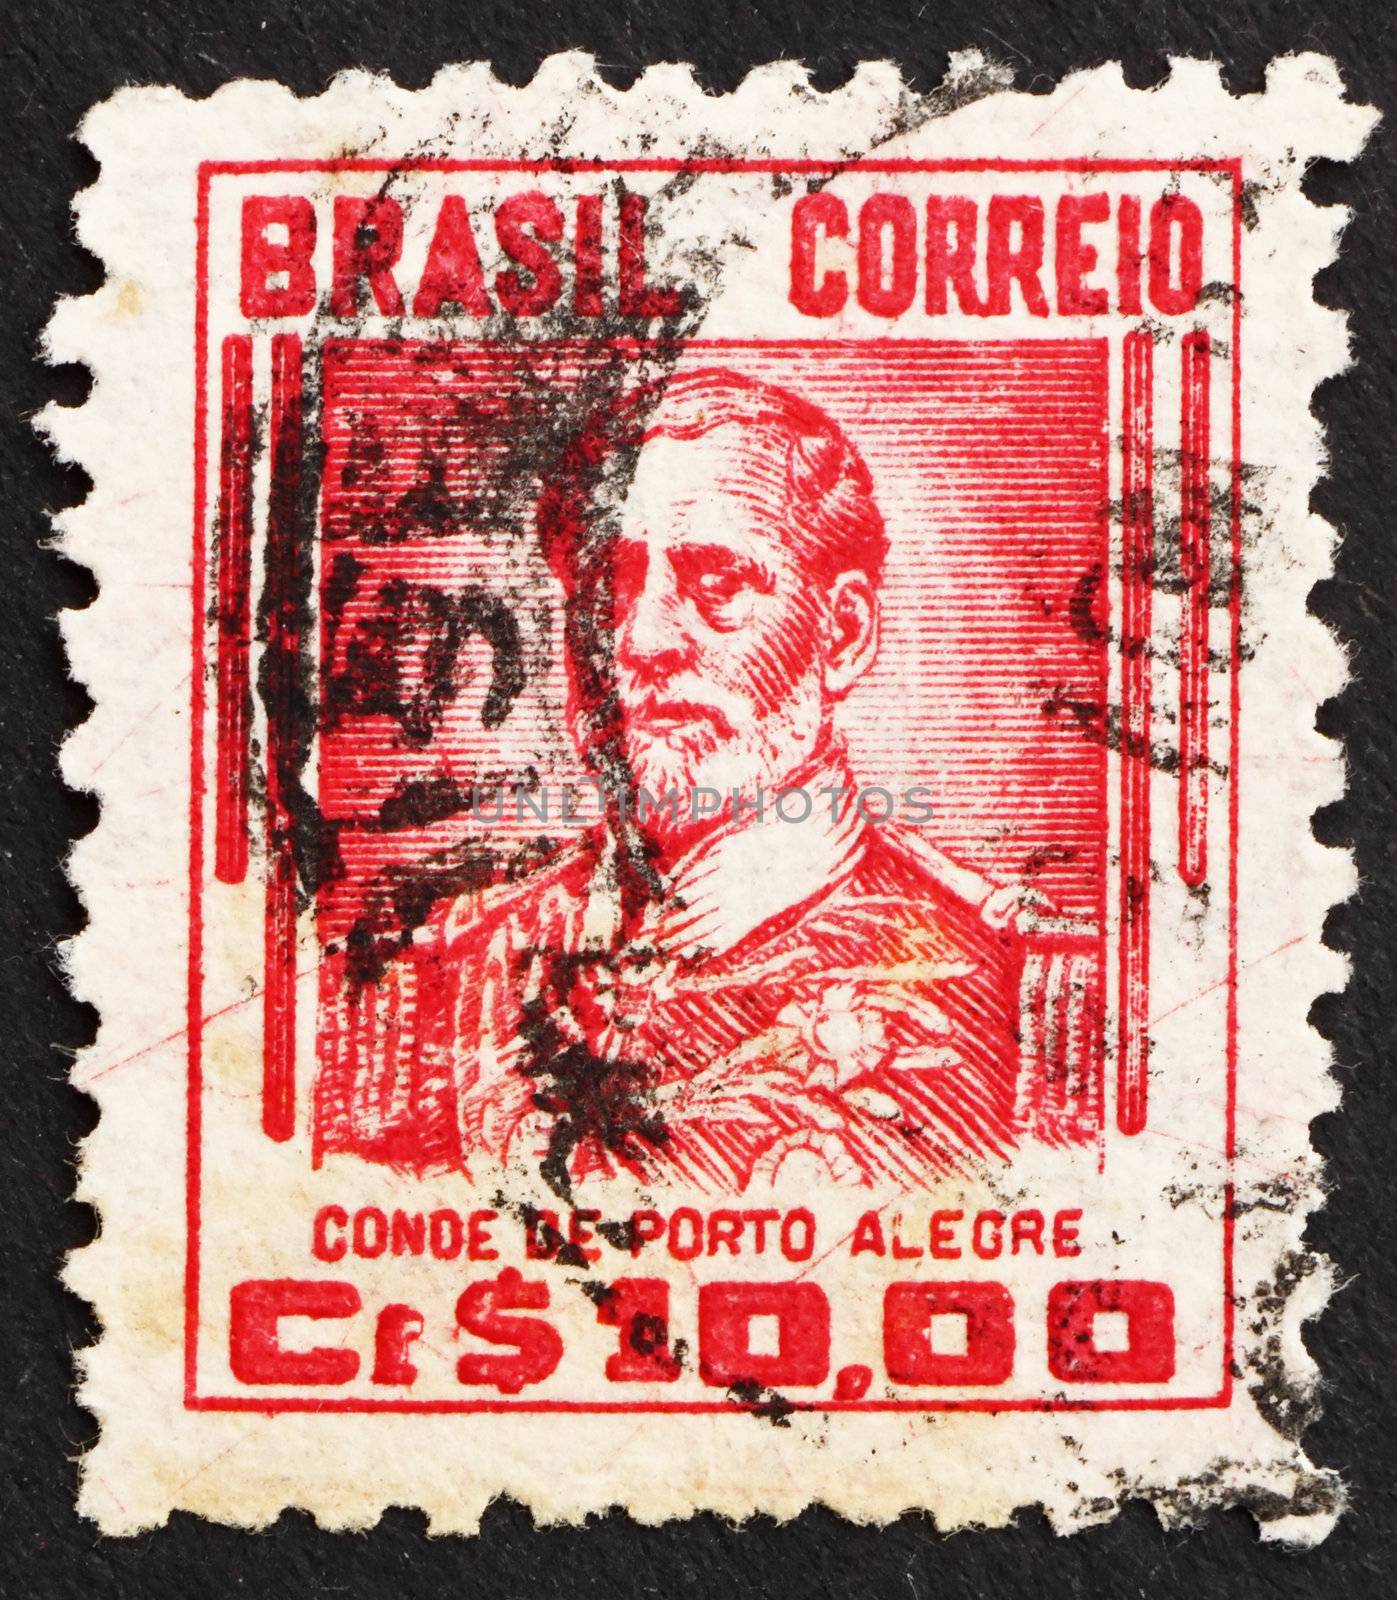 BRAZIL - CIRCA 1941: a stamp printed in the Brazil shows Manuel Marques de Sousa, Count of Porto Alegre, Soldier, Politician, Abolitionist and Monarchist, circa 1941